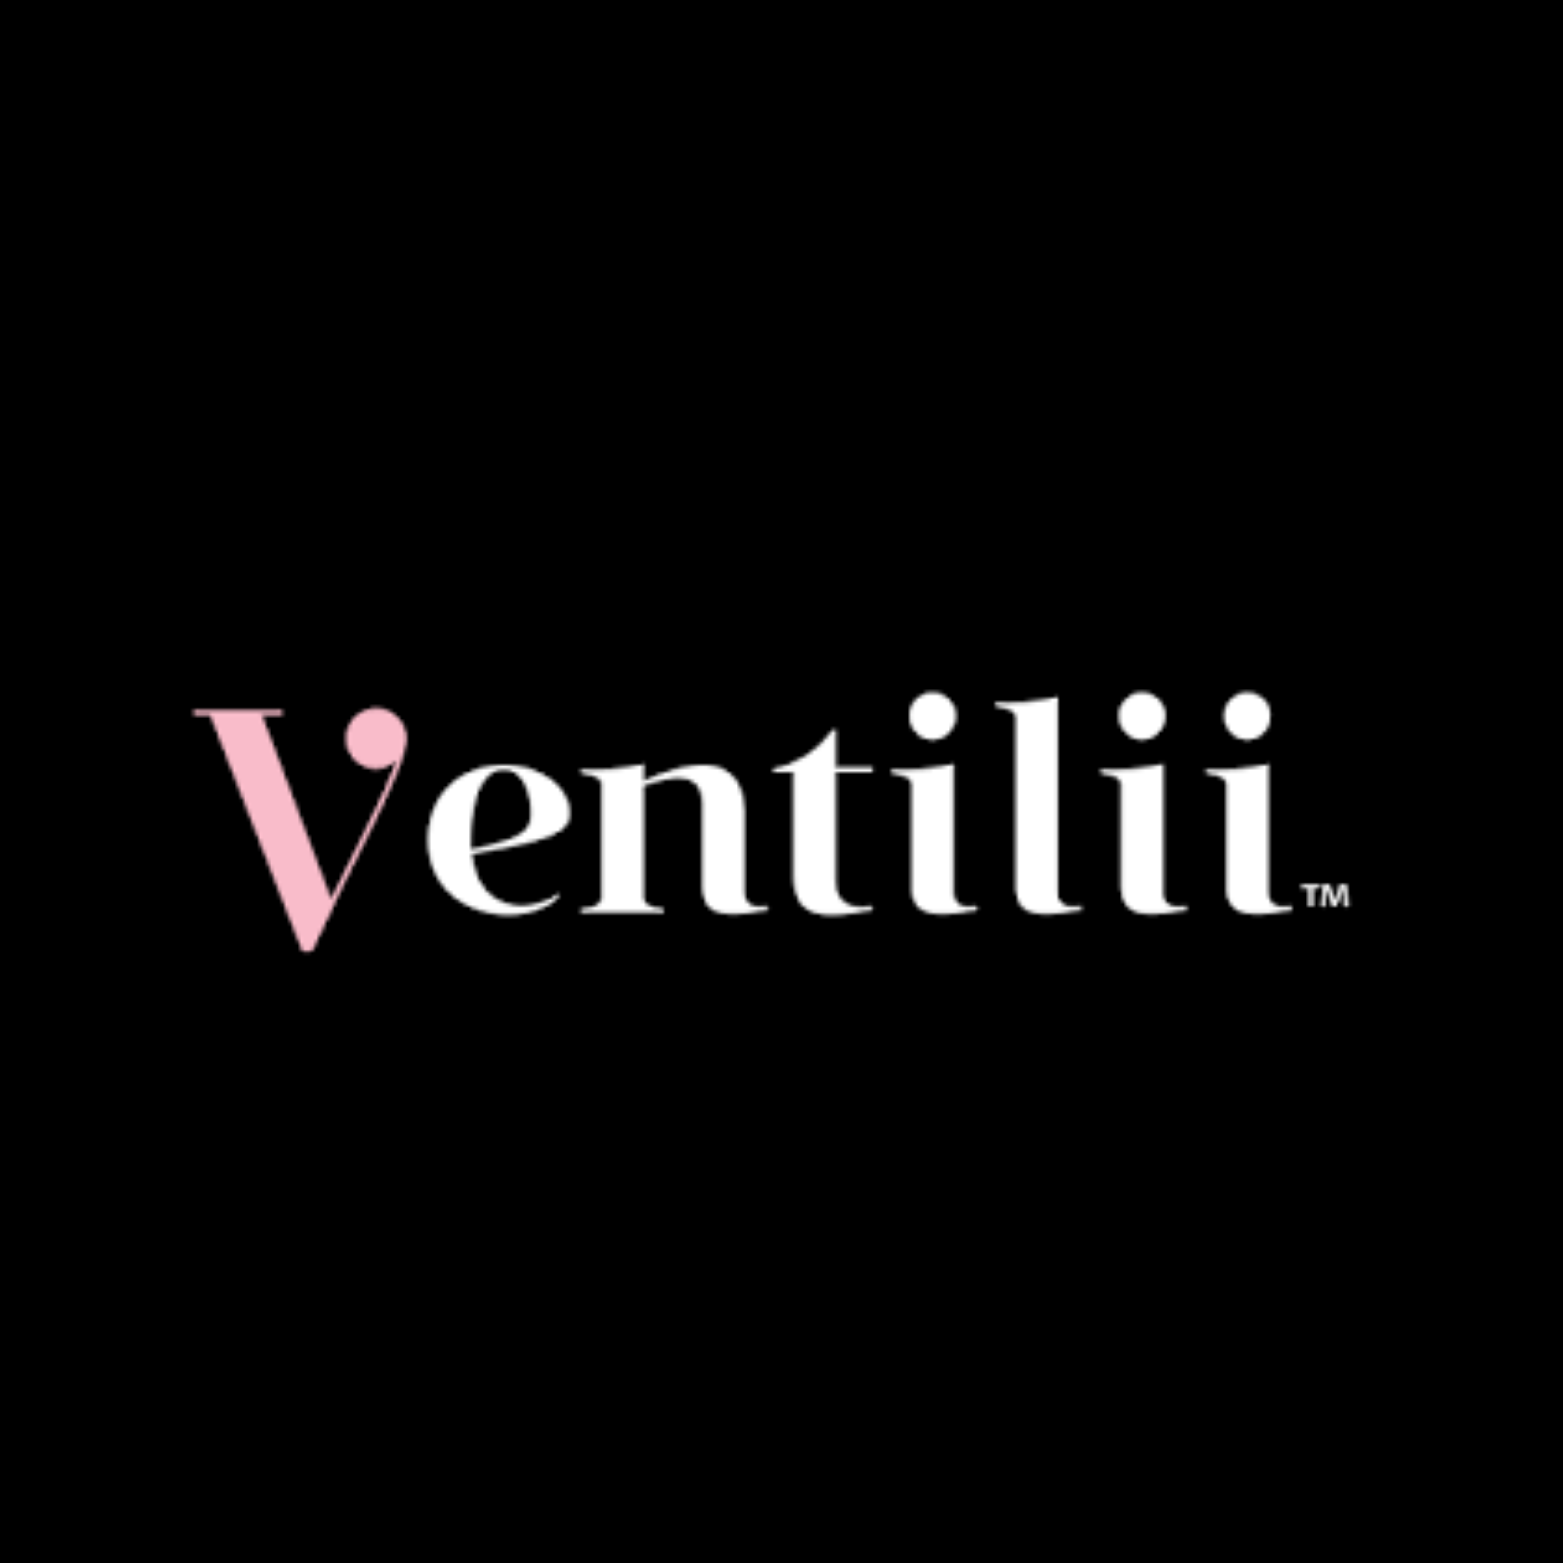 Ventilii Milano